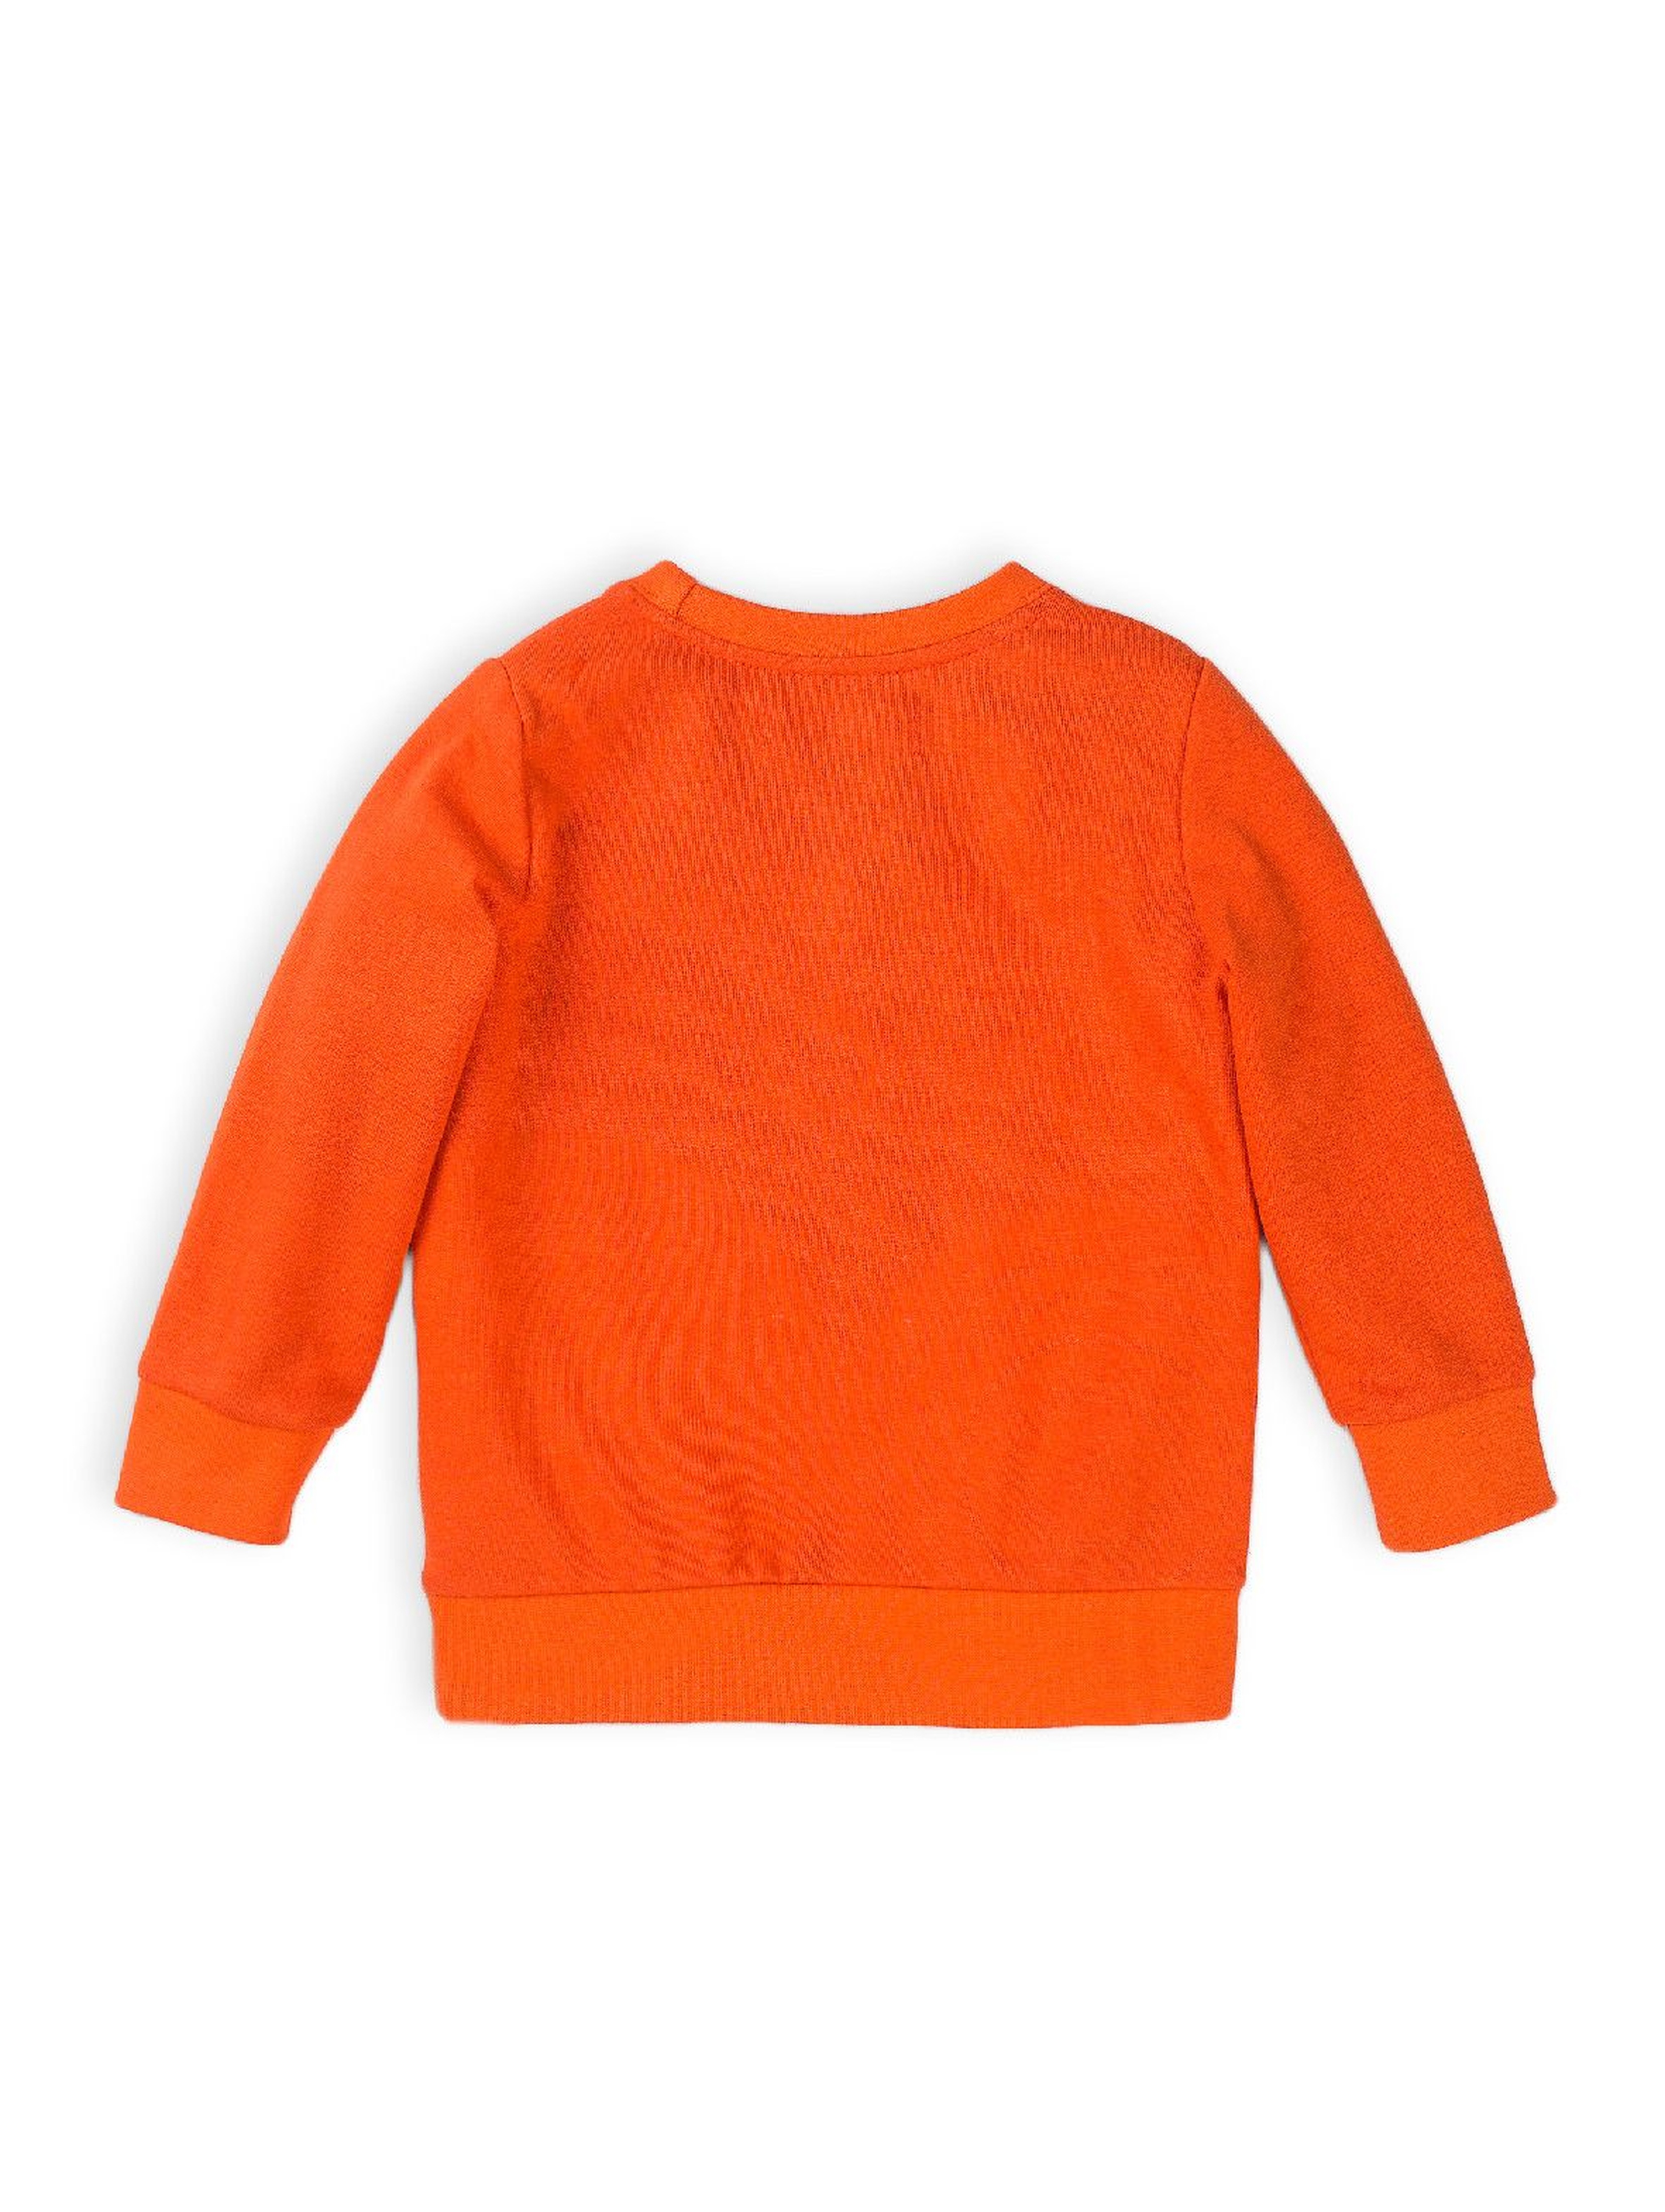 Bluza dresowa chłopięca pomarańczowa